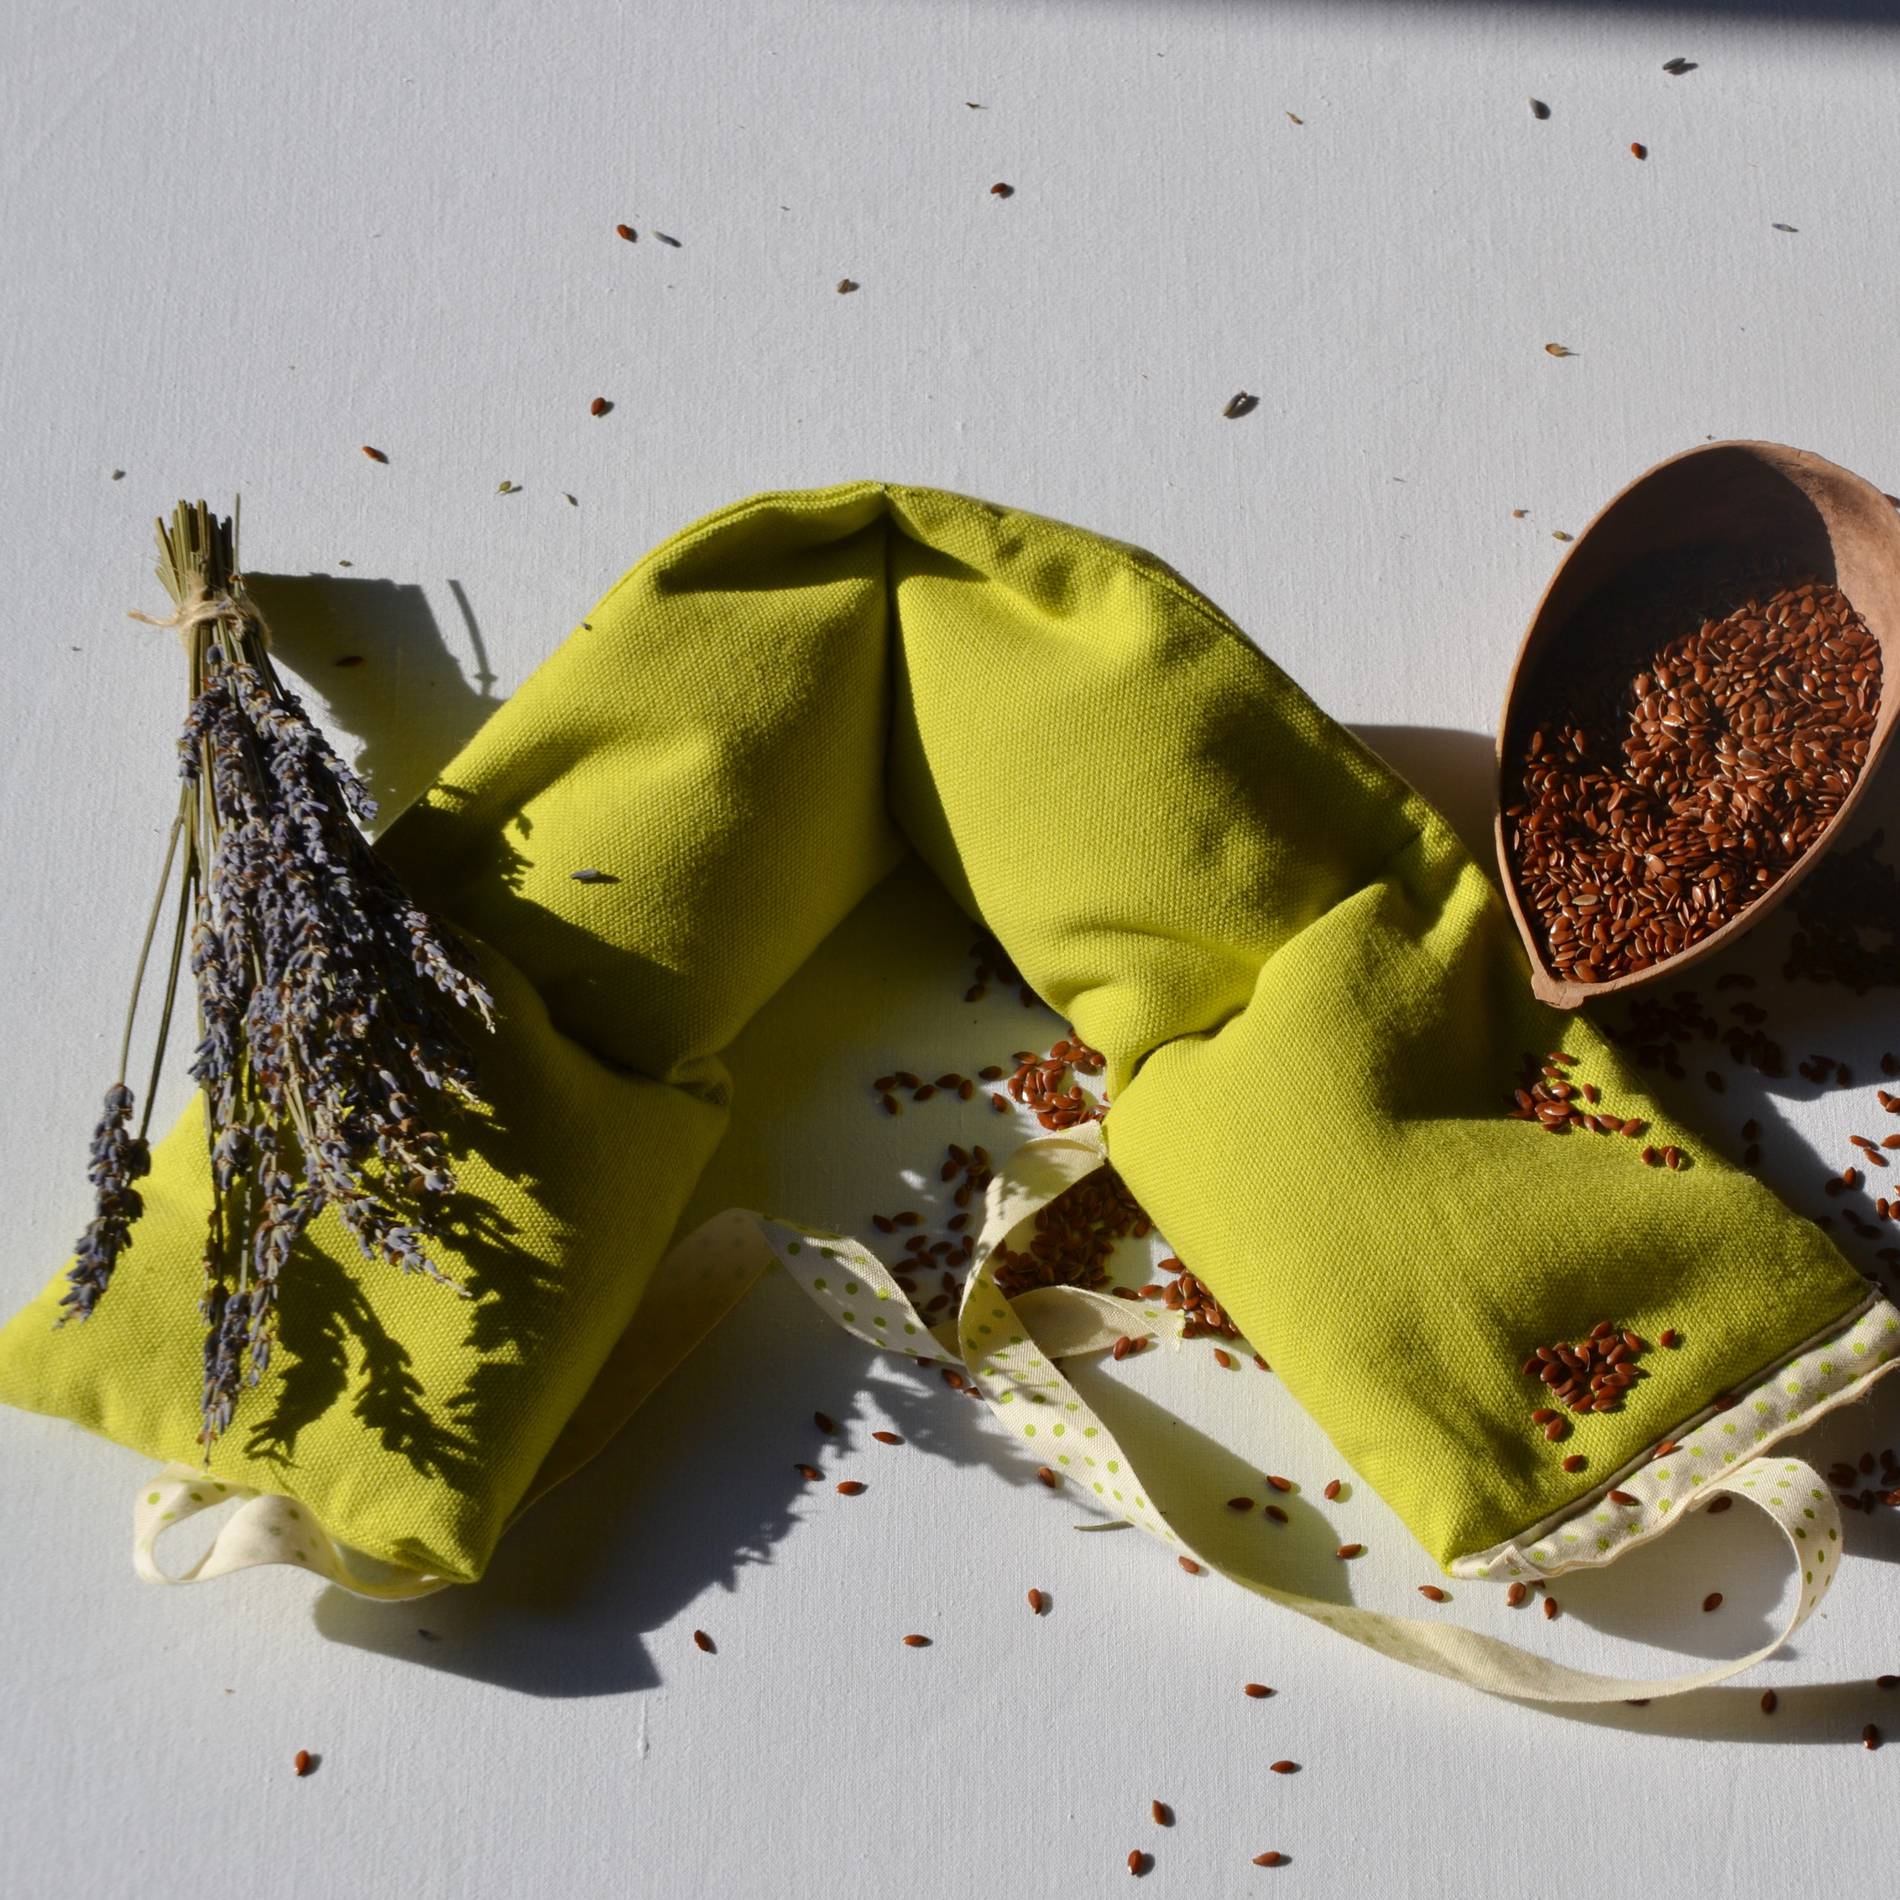 Fil en Poche-Bouillotte sèche artisanale tour de cou en graines de lin bio et lavande bio-vert